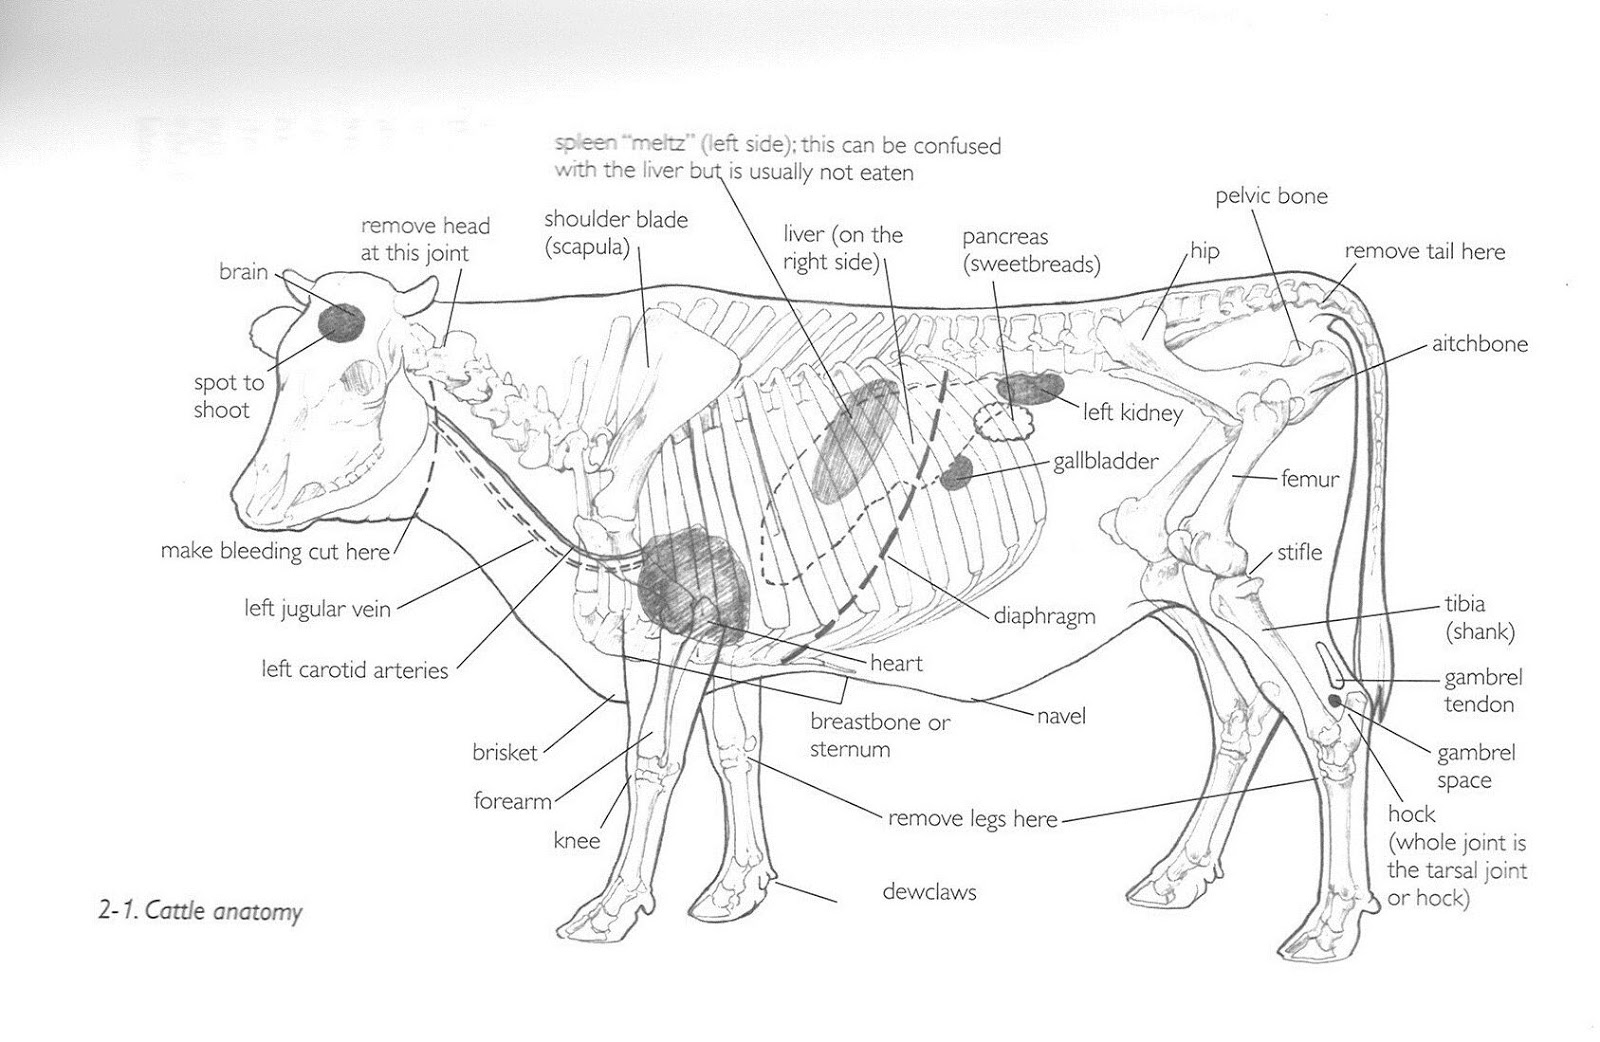 Cows Anatomy Diagram